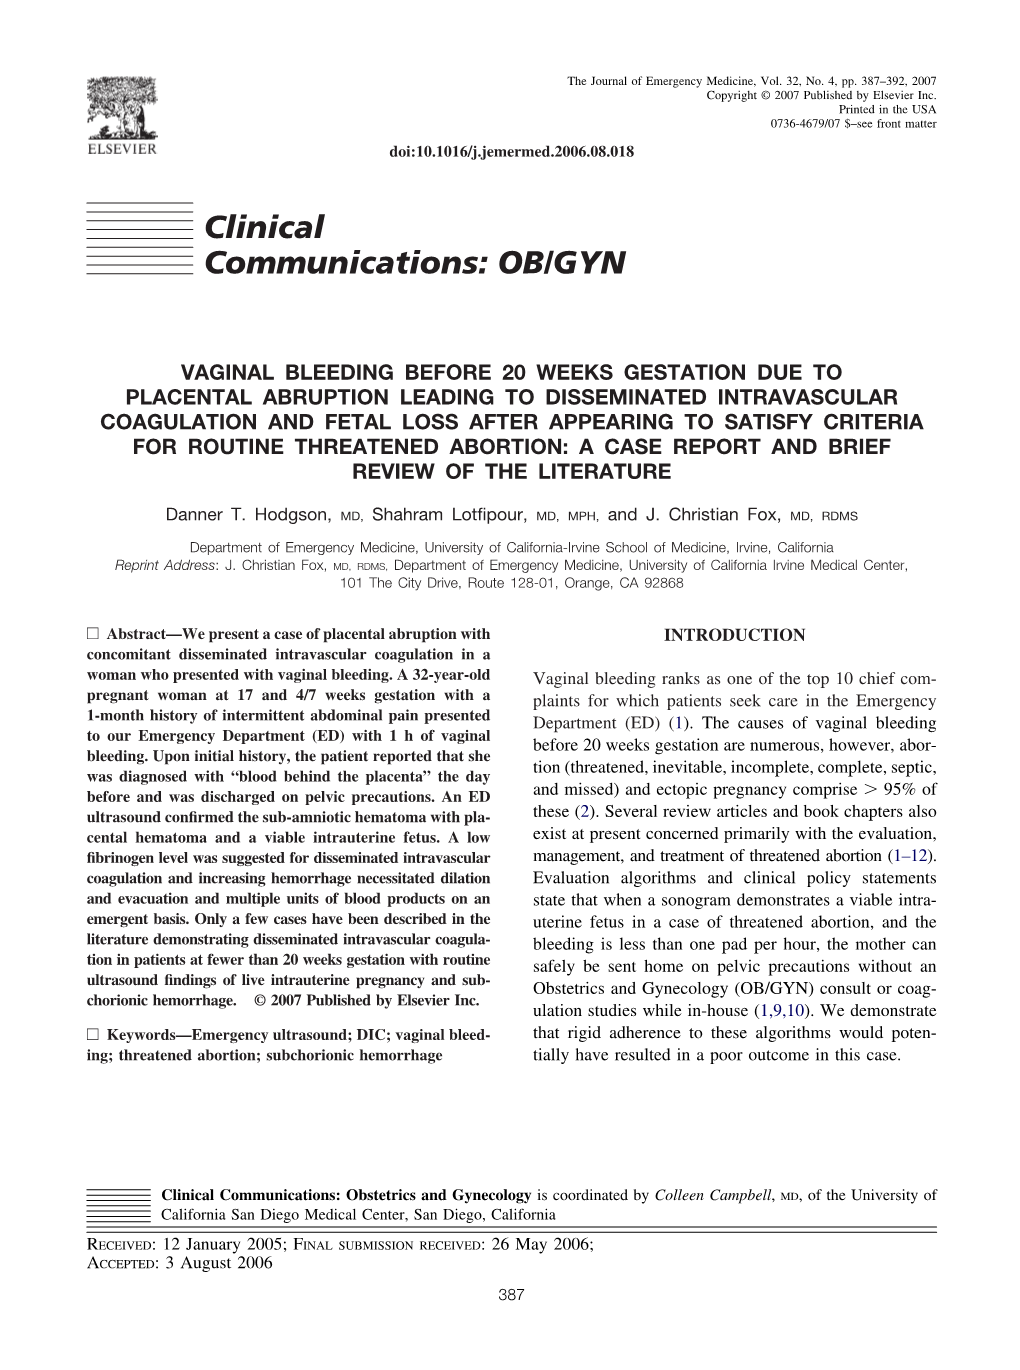 Clinical Communications: OB/GYN